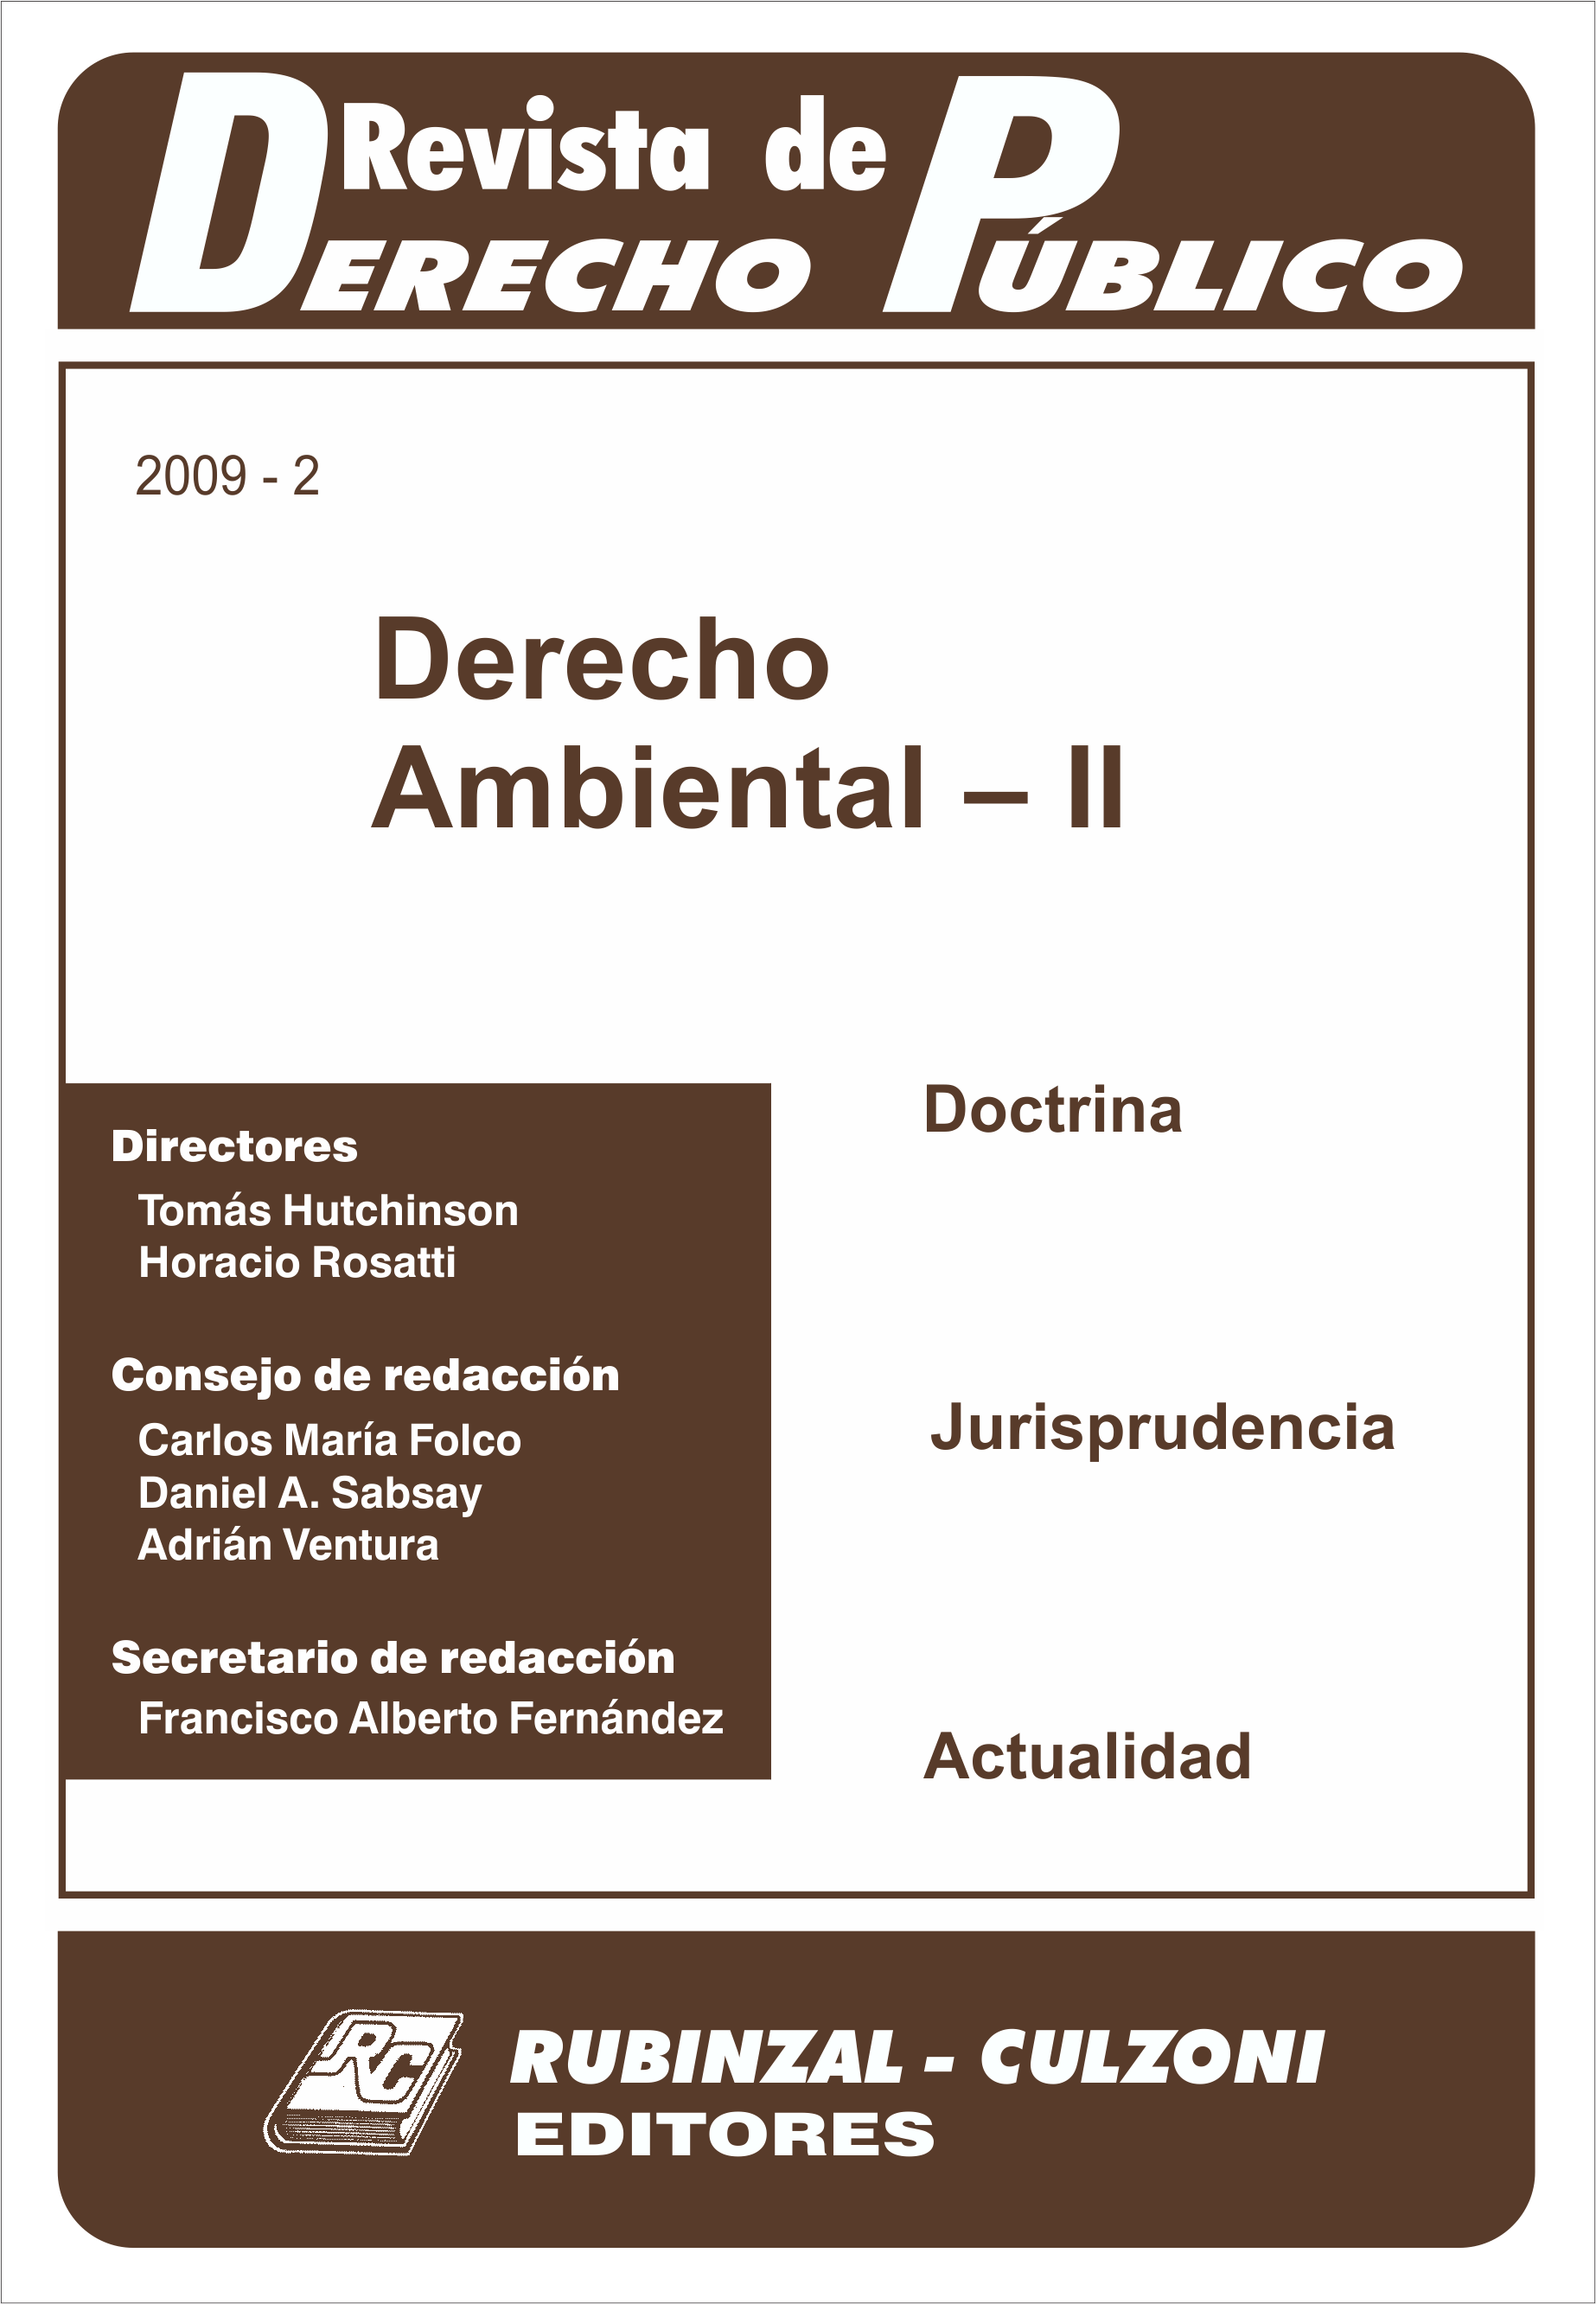 Revista de Derecho Público - Derecho Ambiental - II